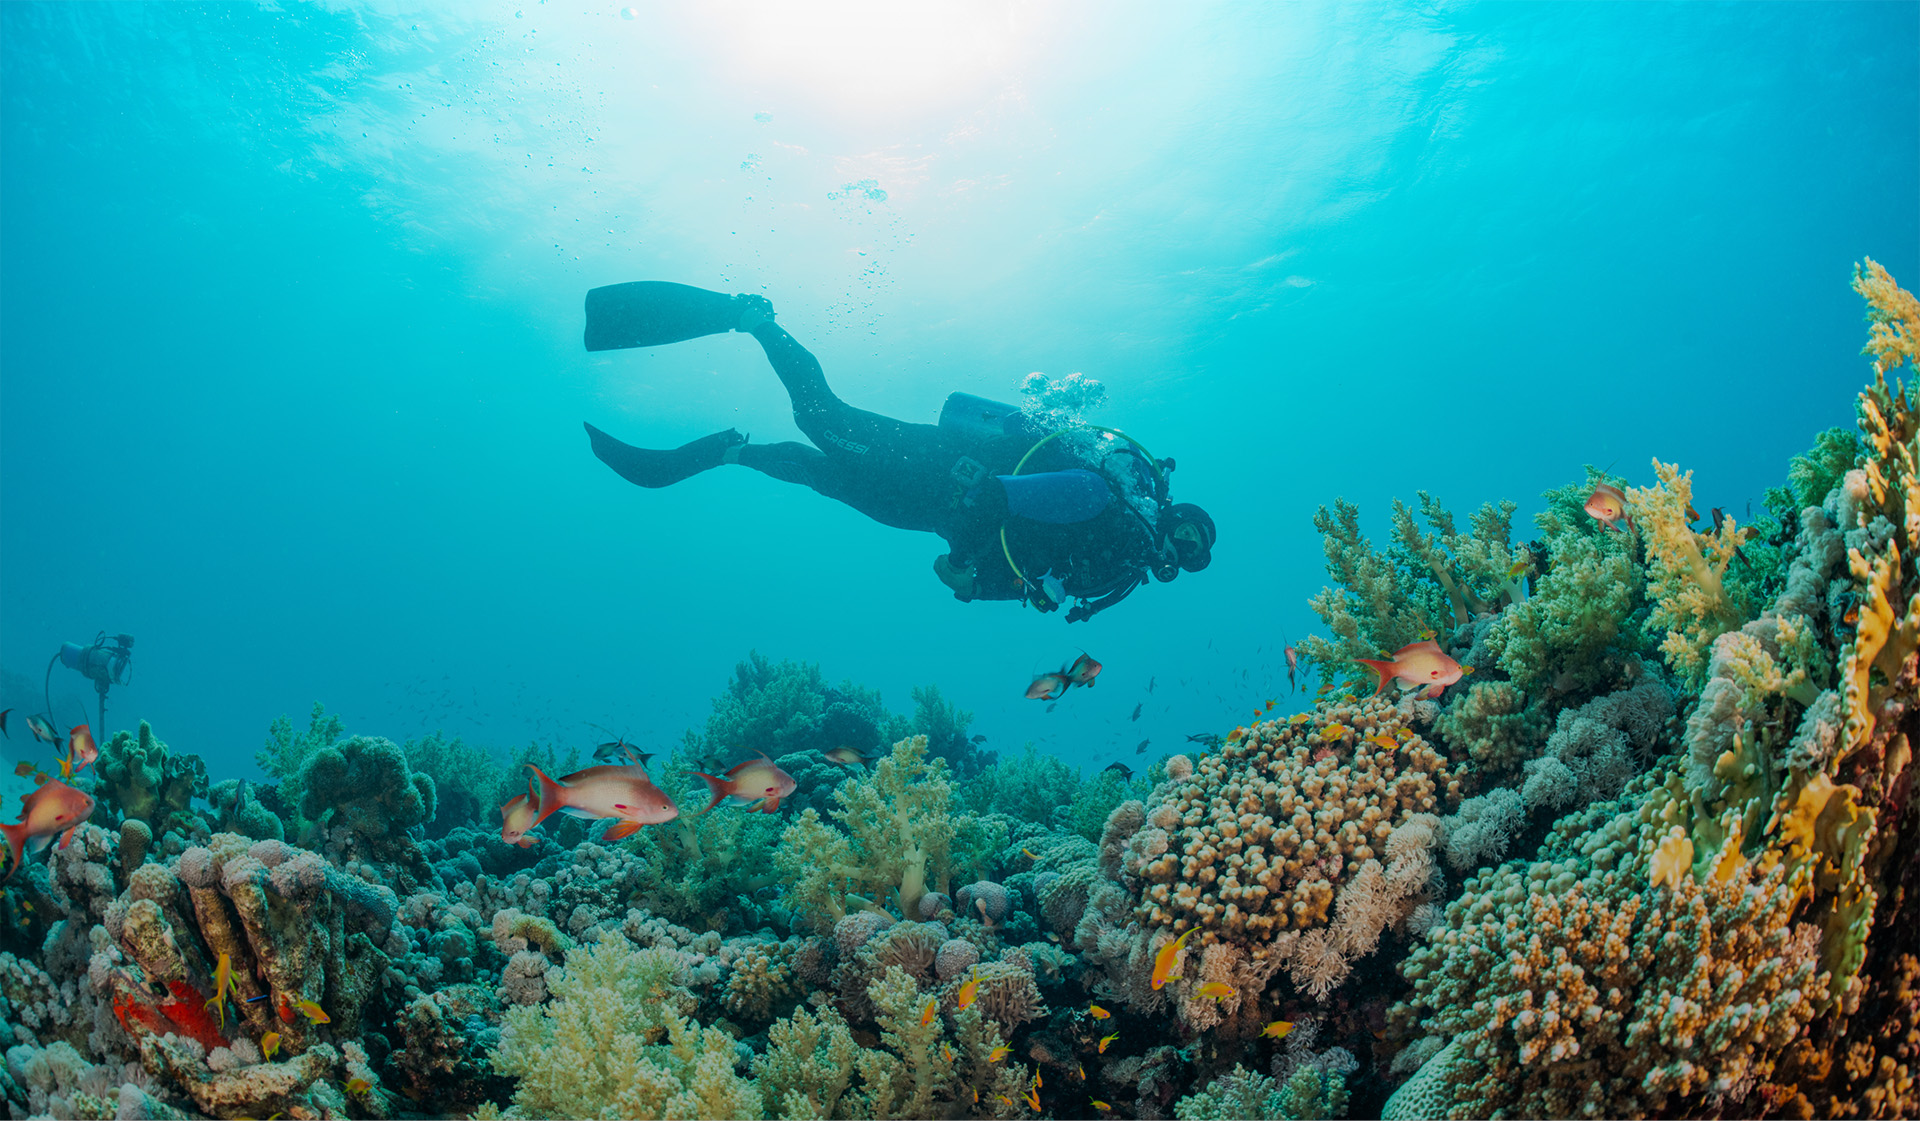 تجارب مائية وغوص تحت الماء في البحر الأحمر